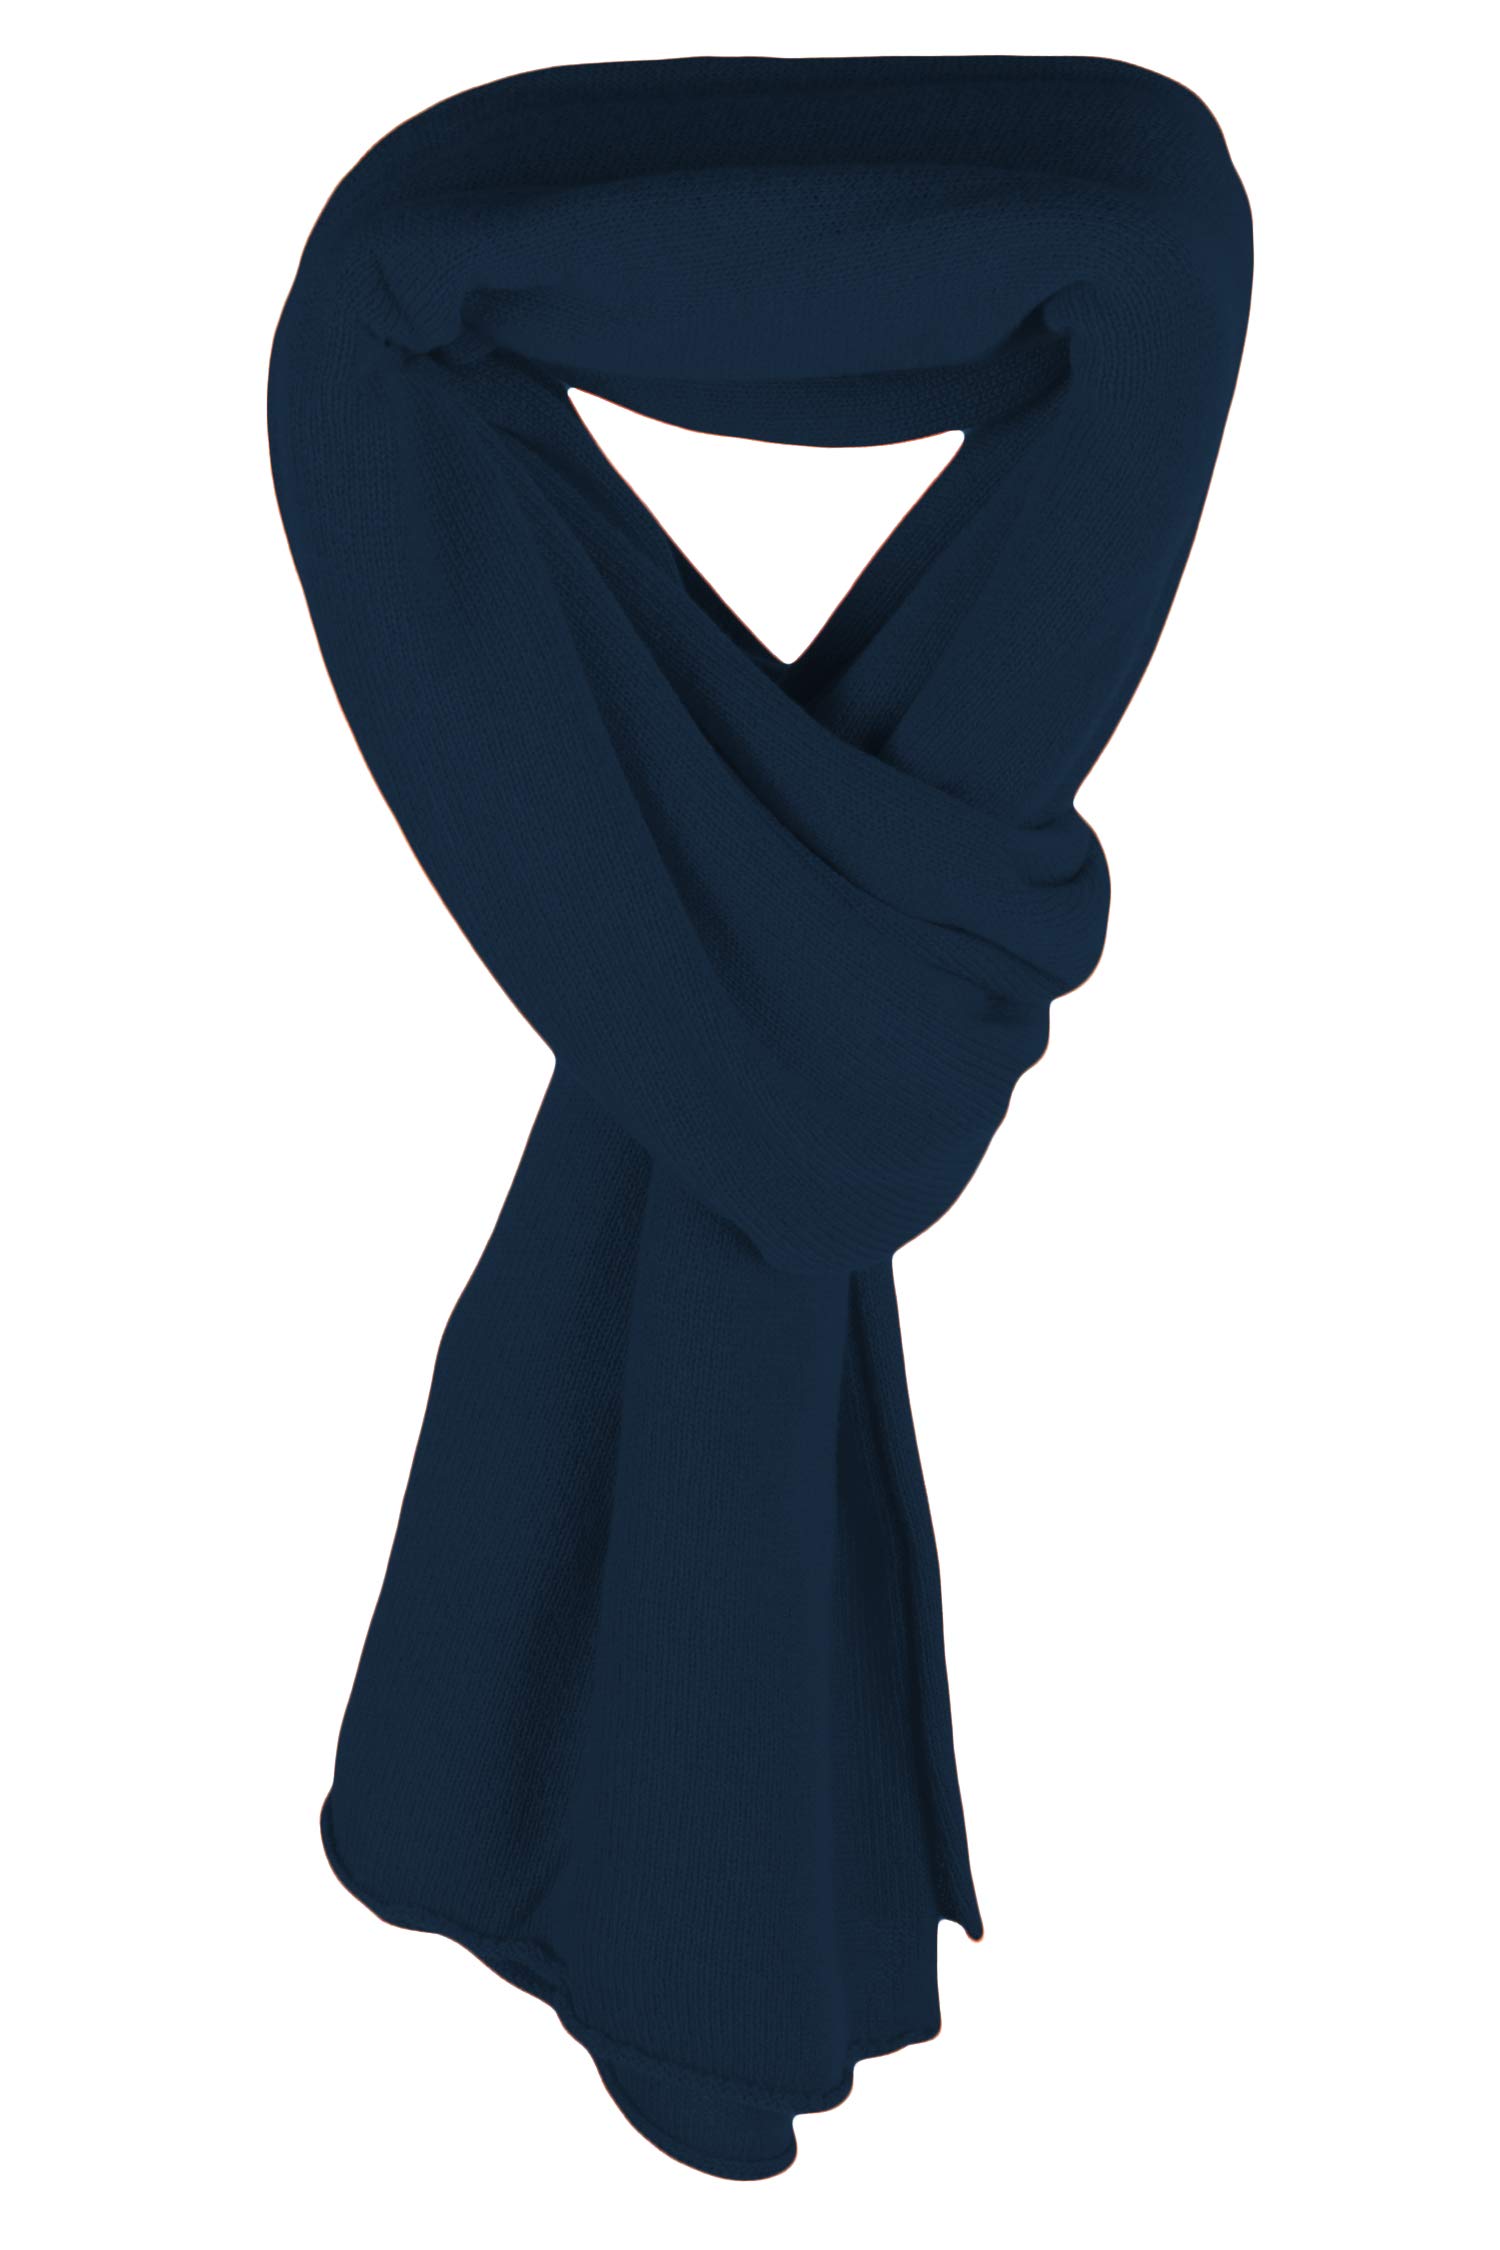 Haute Qualité Love Cashmere Écharpe pour femme 100 % cachemire – Bleu marine – Fabriqué en Écosse, bleu marine, taille unique Qffp8HEUw pas cher